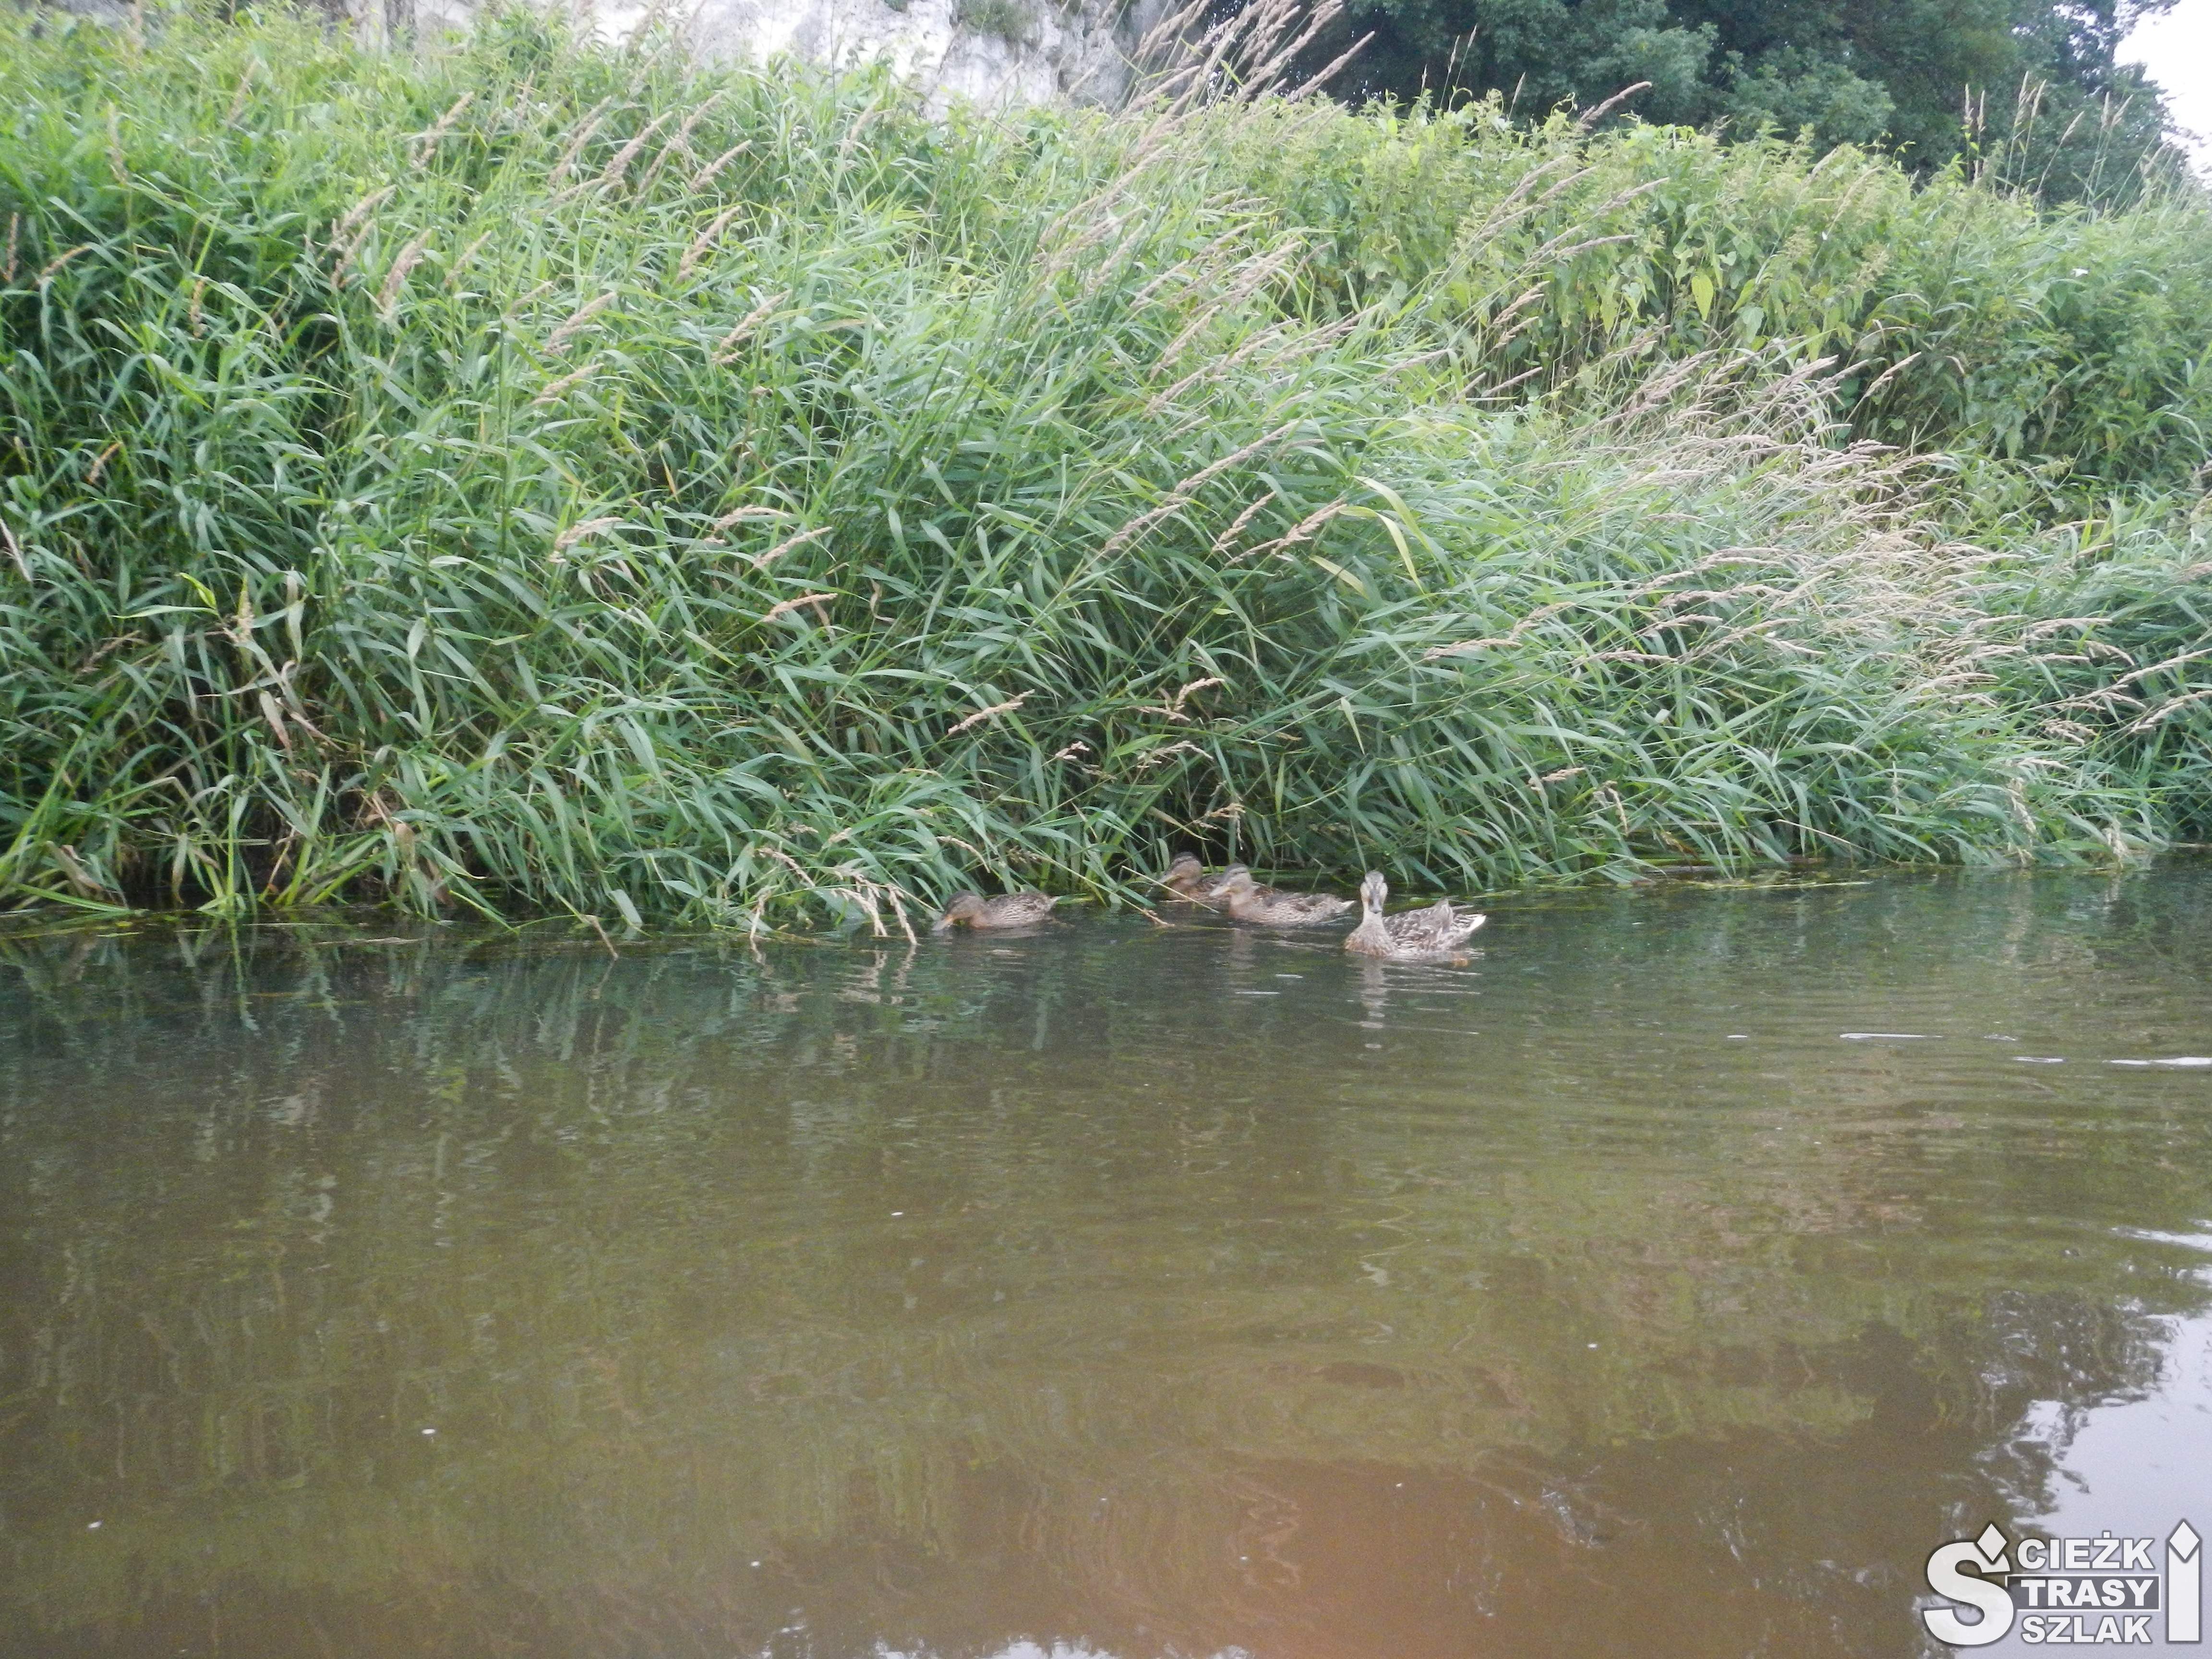 Stado dzikich kaczek pływającym przy lewym brzegu Warty widziane przej kajakarza uczestniczącego w spływie kajakowym